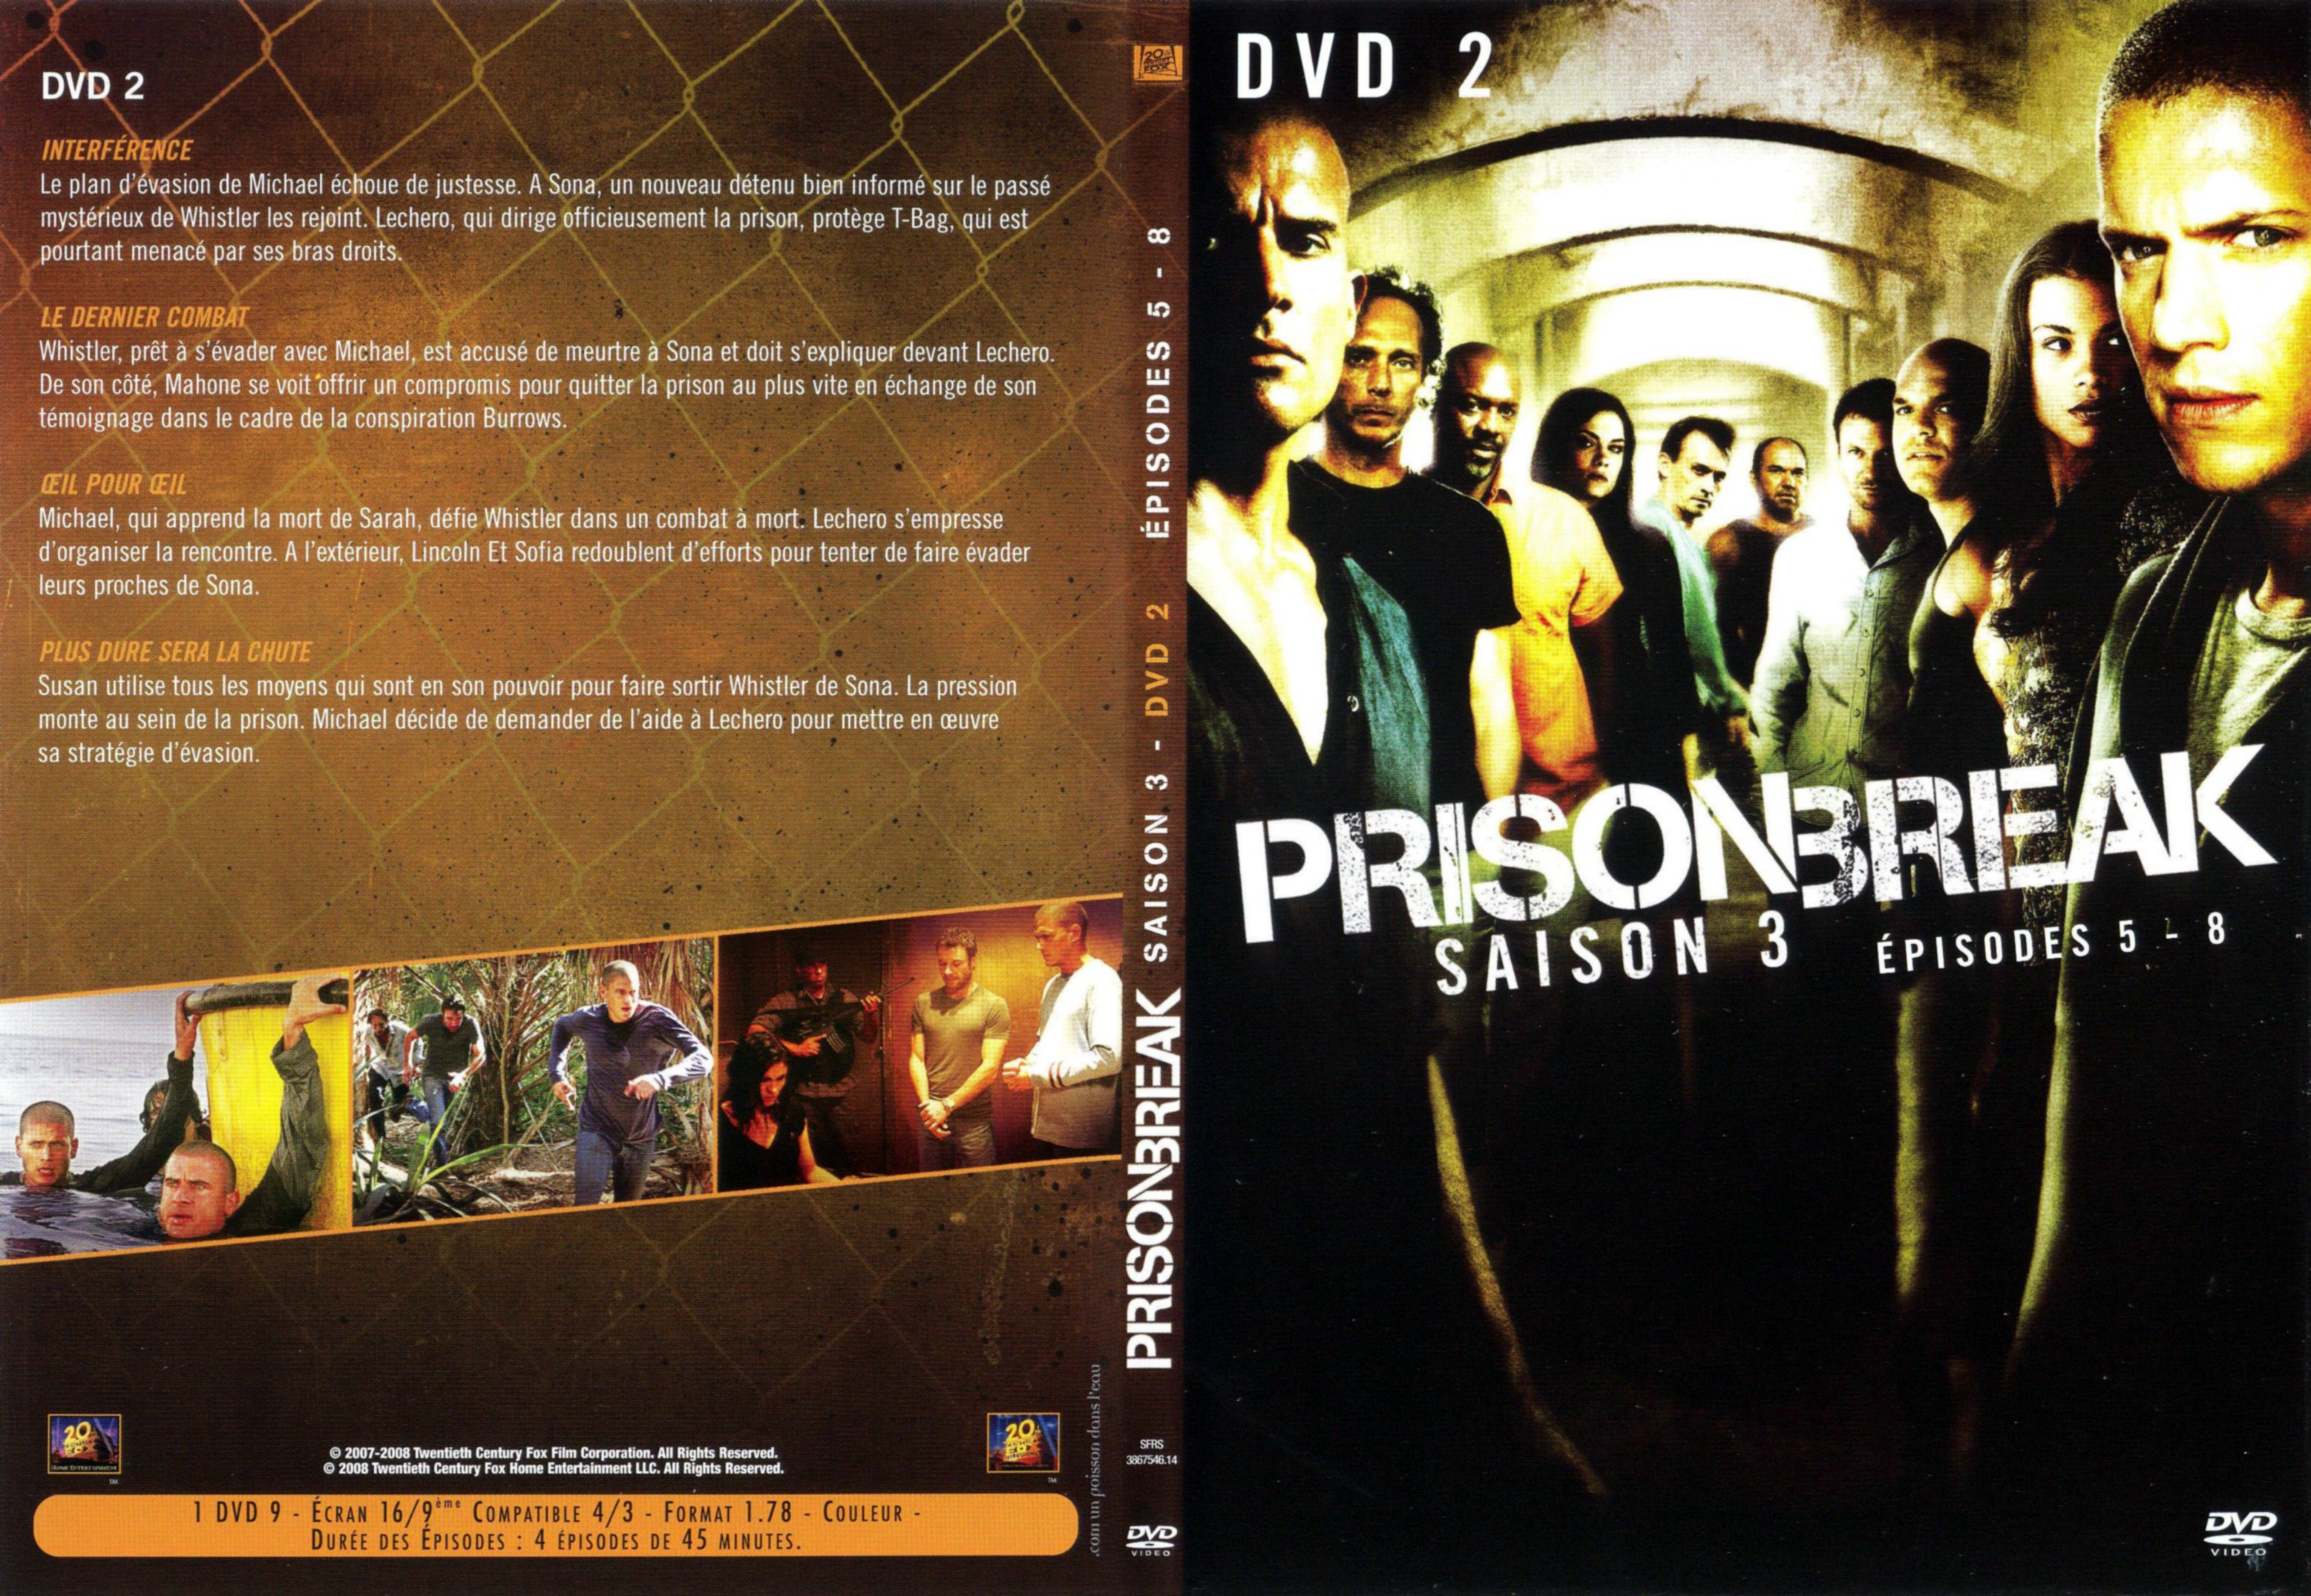 Jaquette DVD Prison break Saison 3 DVD 2